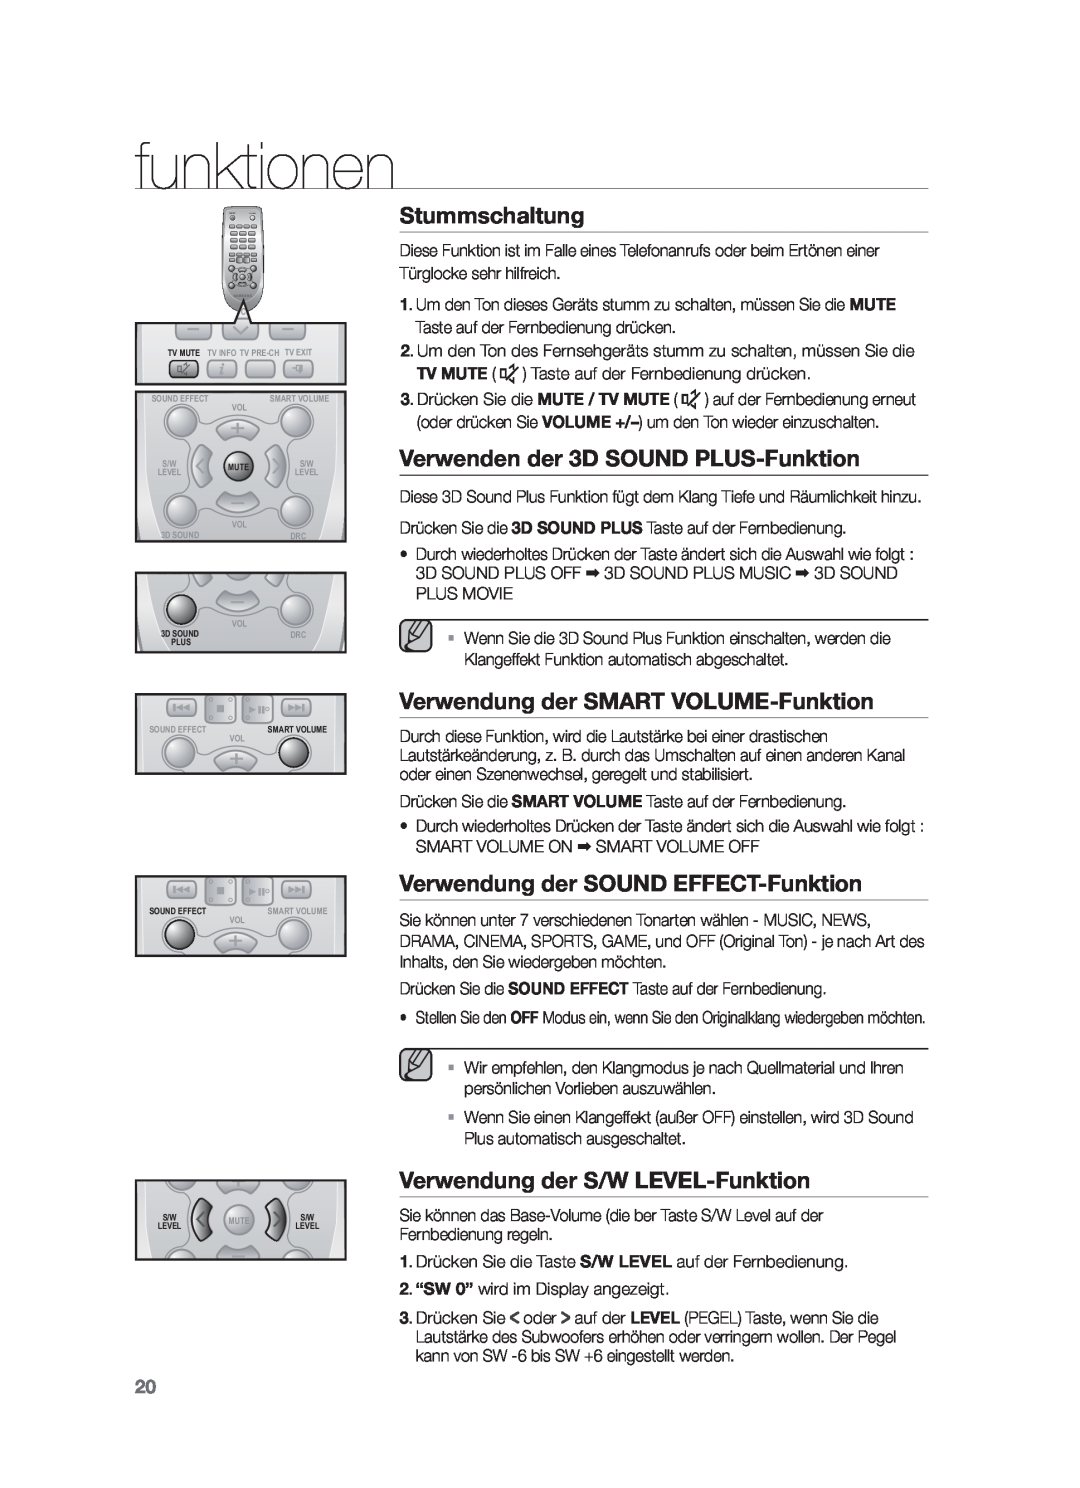 Samsung HW-F551/XN Stummschaltung, Verwenden der 3D SOUND PLUS-Funktion, Verwendung der SMART VOLUME-Funktion, funktionen 